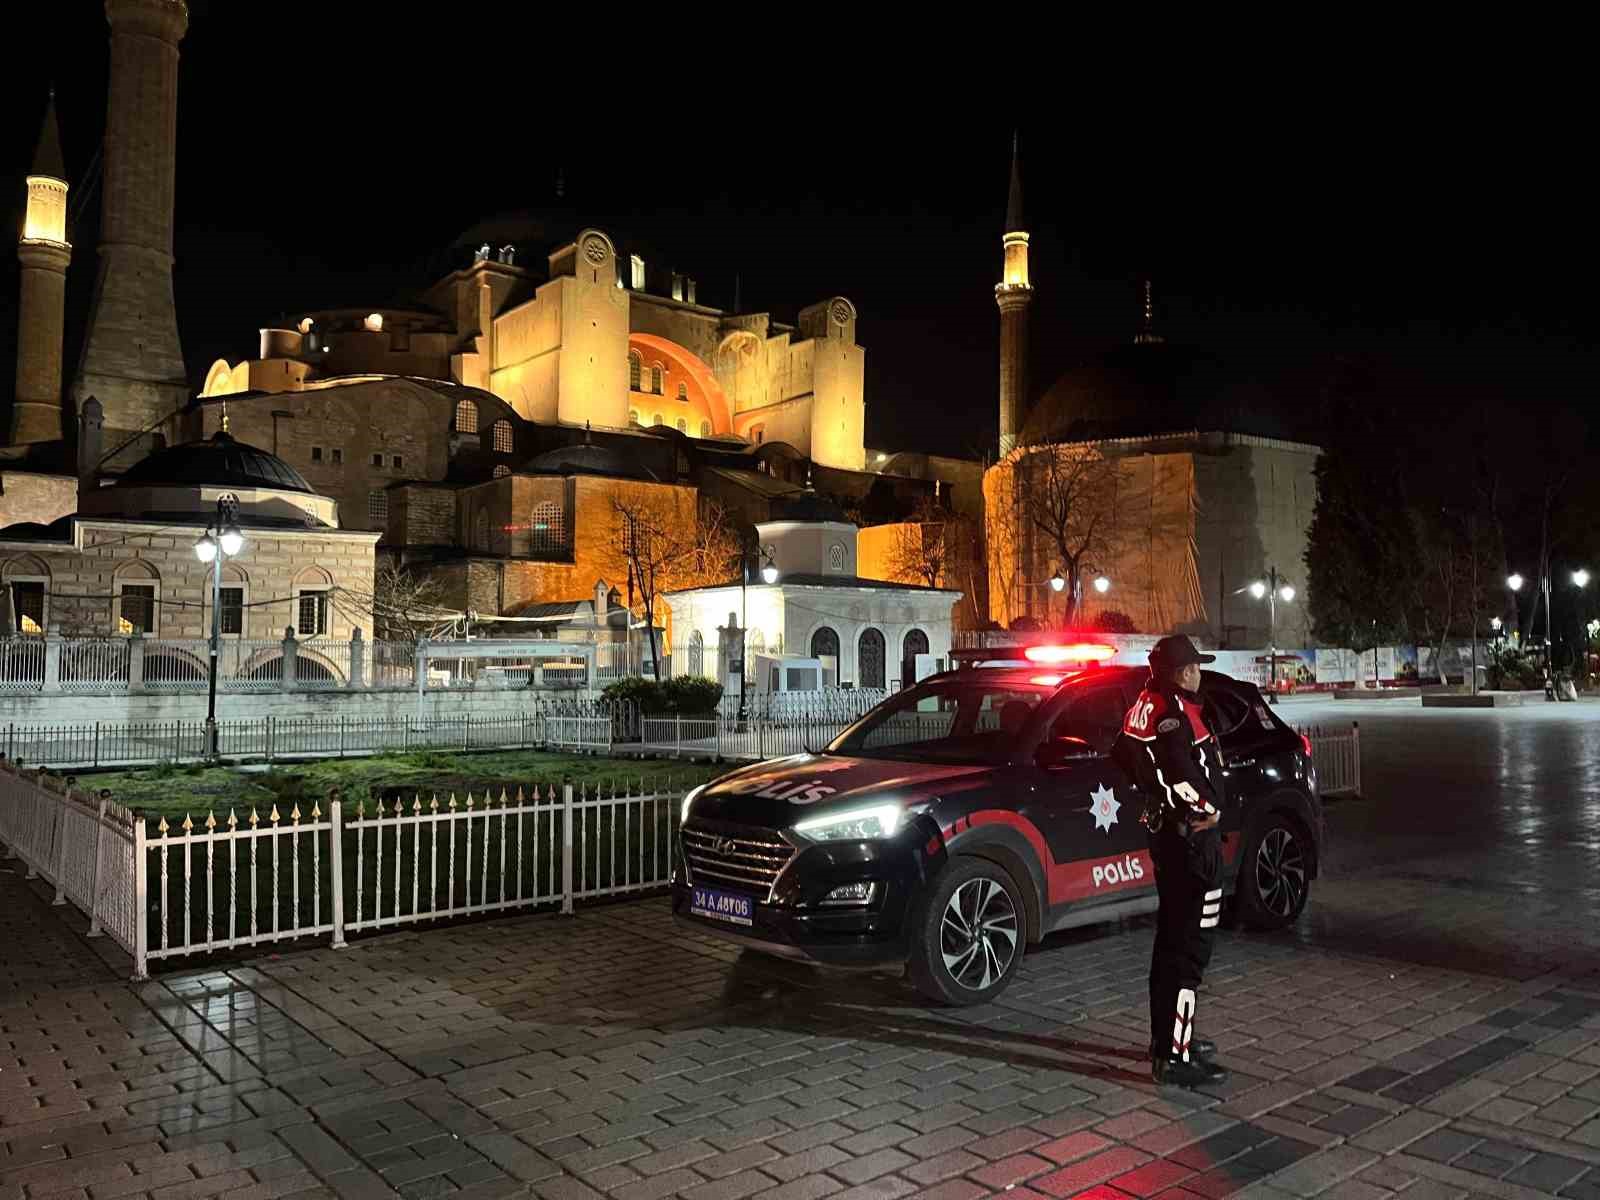 İstanbul’da Güvenlik Tedbirleri Arttırılarak “Genel Güvenlik Uygulaması” Gerçekleştirildi